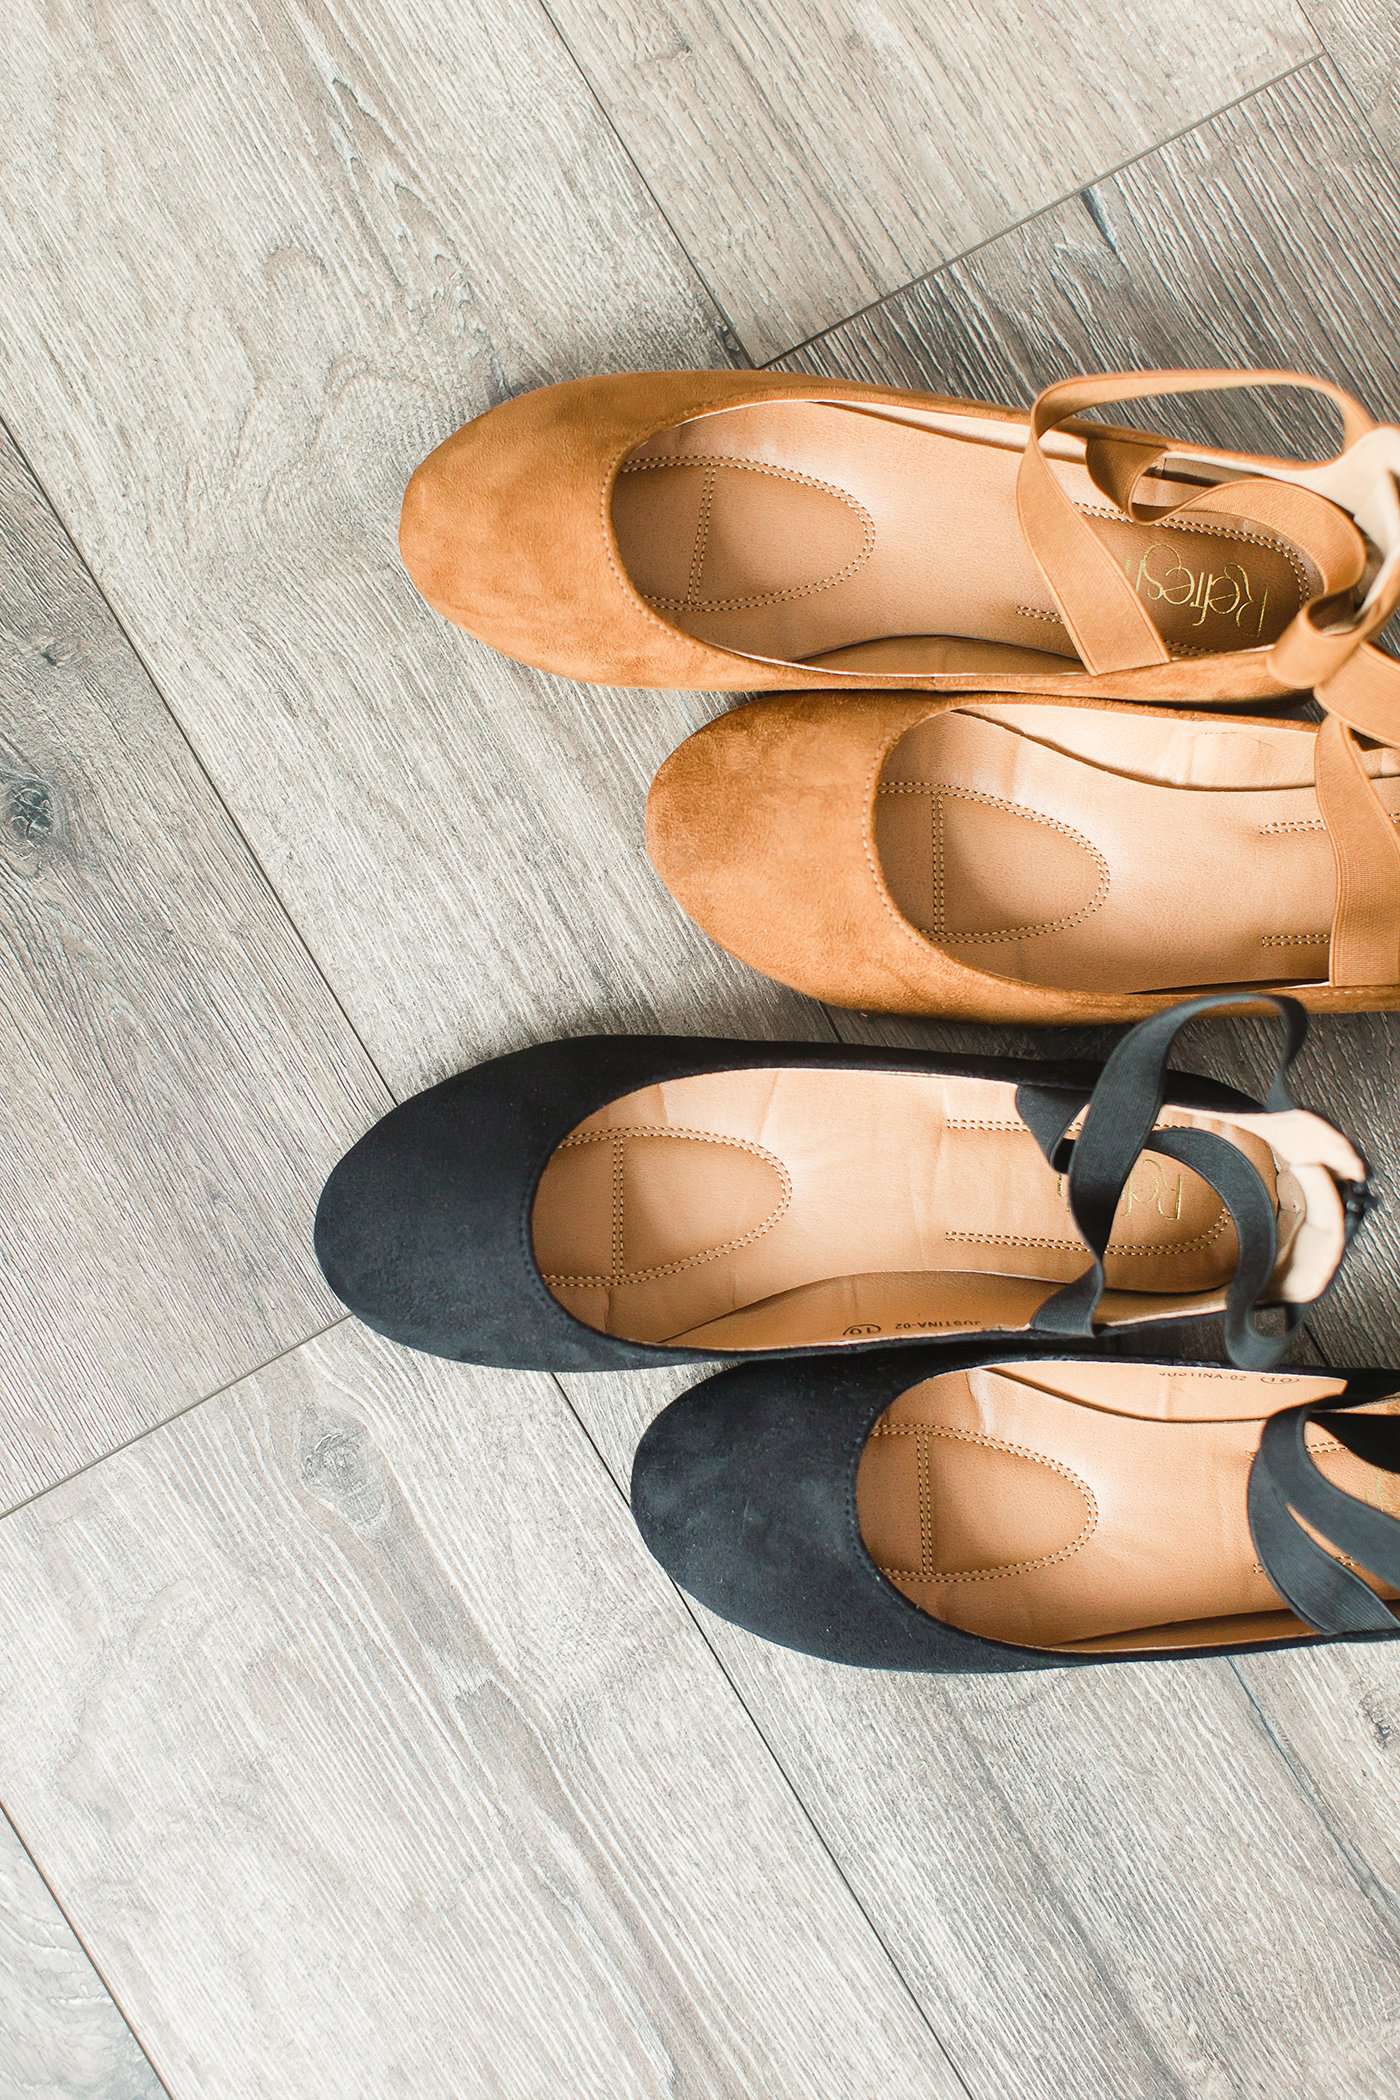 Black or tan ankle wrap faux suede ballet flats.